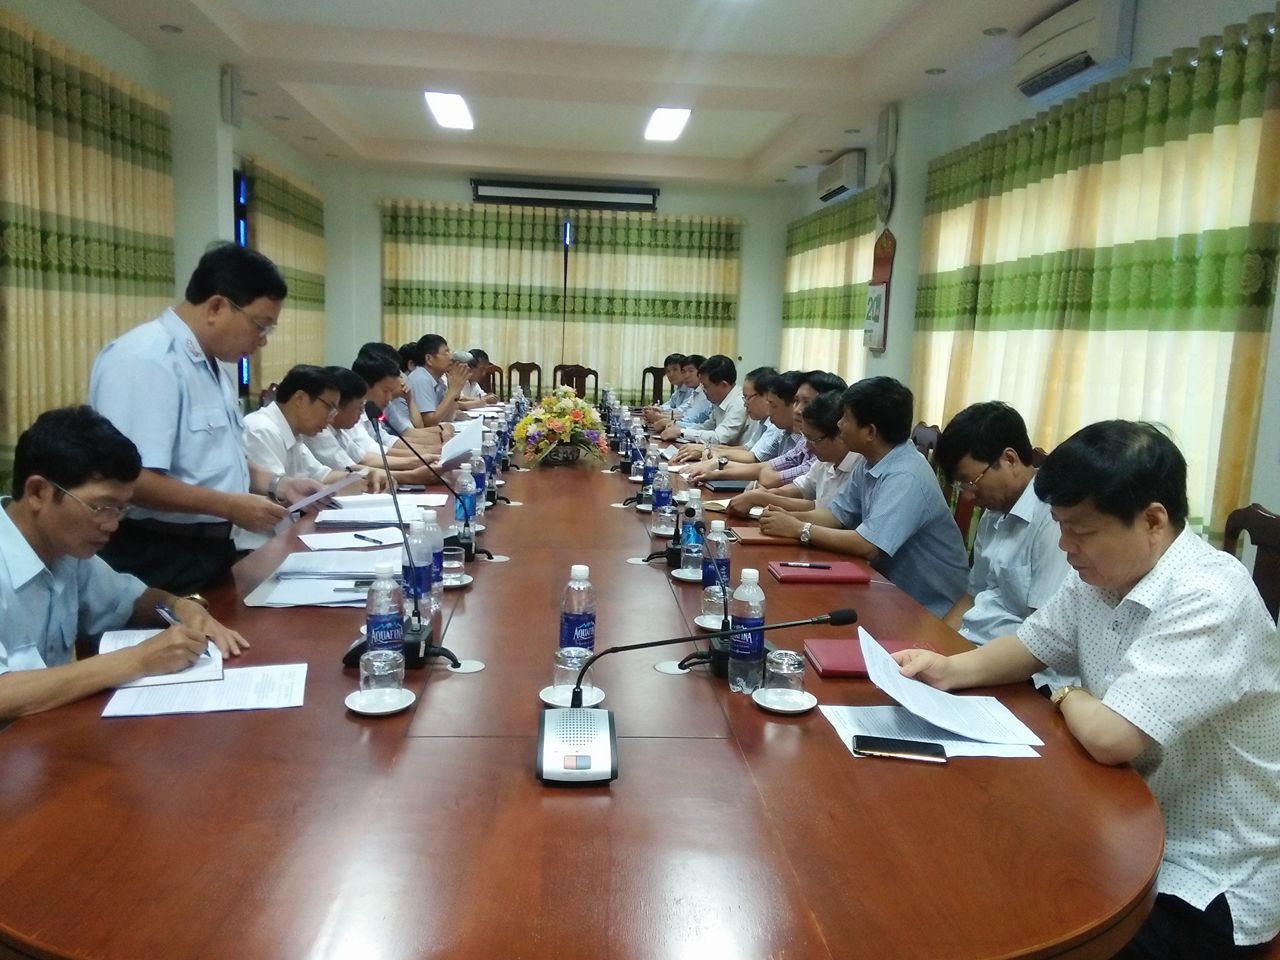  Hội nghị công bố Kết luận thanh tra tại một đơn vị của tỉnh Quảng Bình